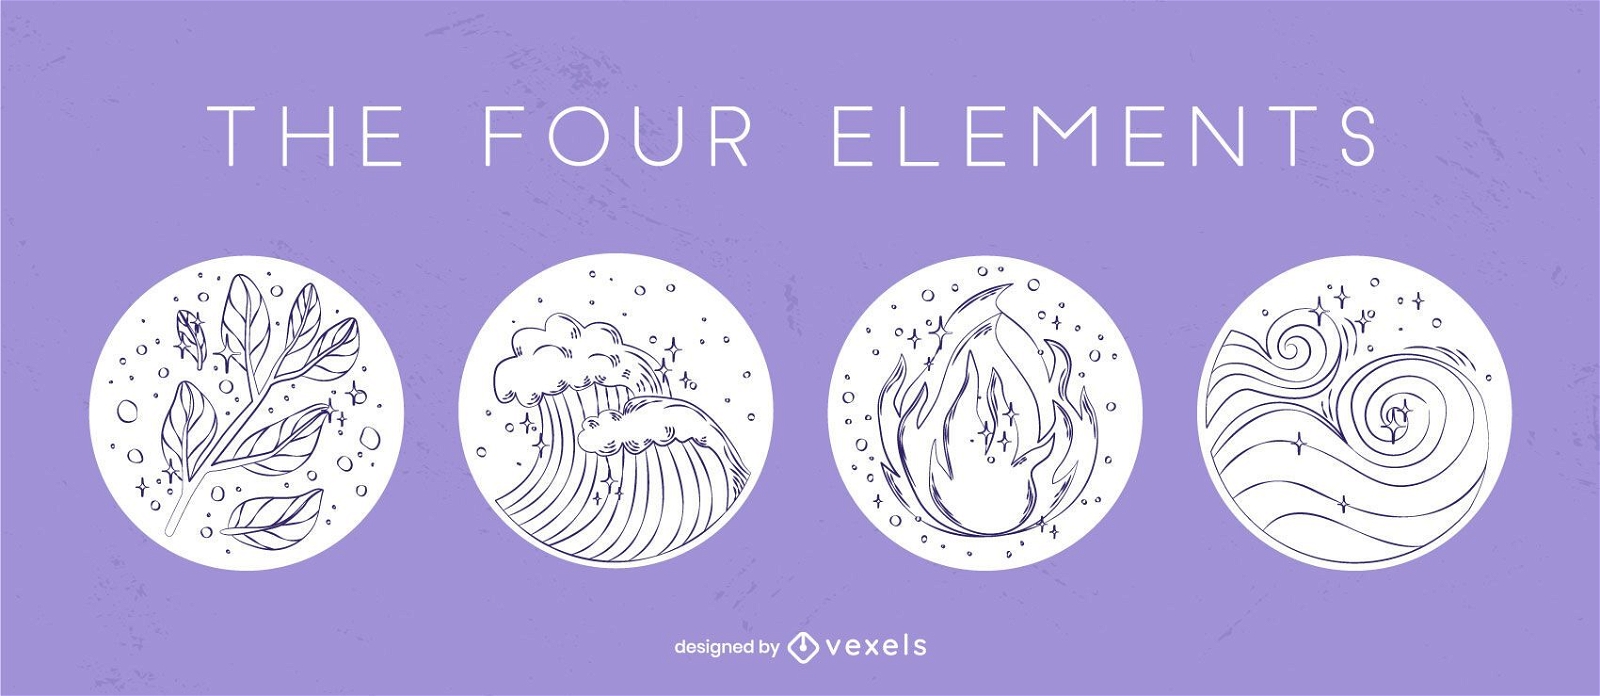 Conjunto de insignias dibujadas a mano de cuatro elementos.